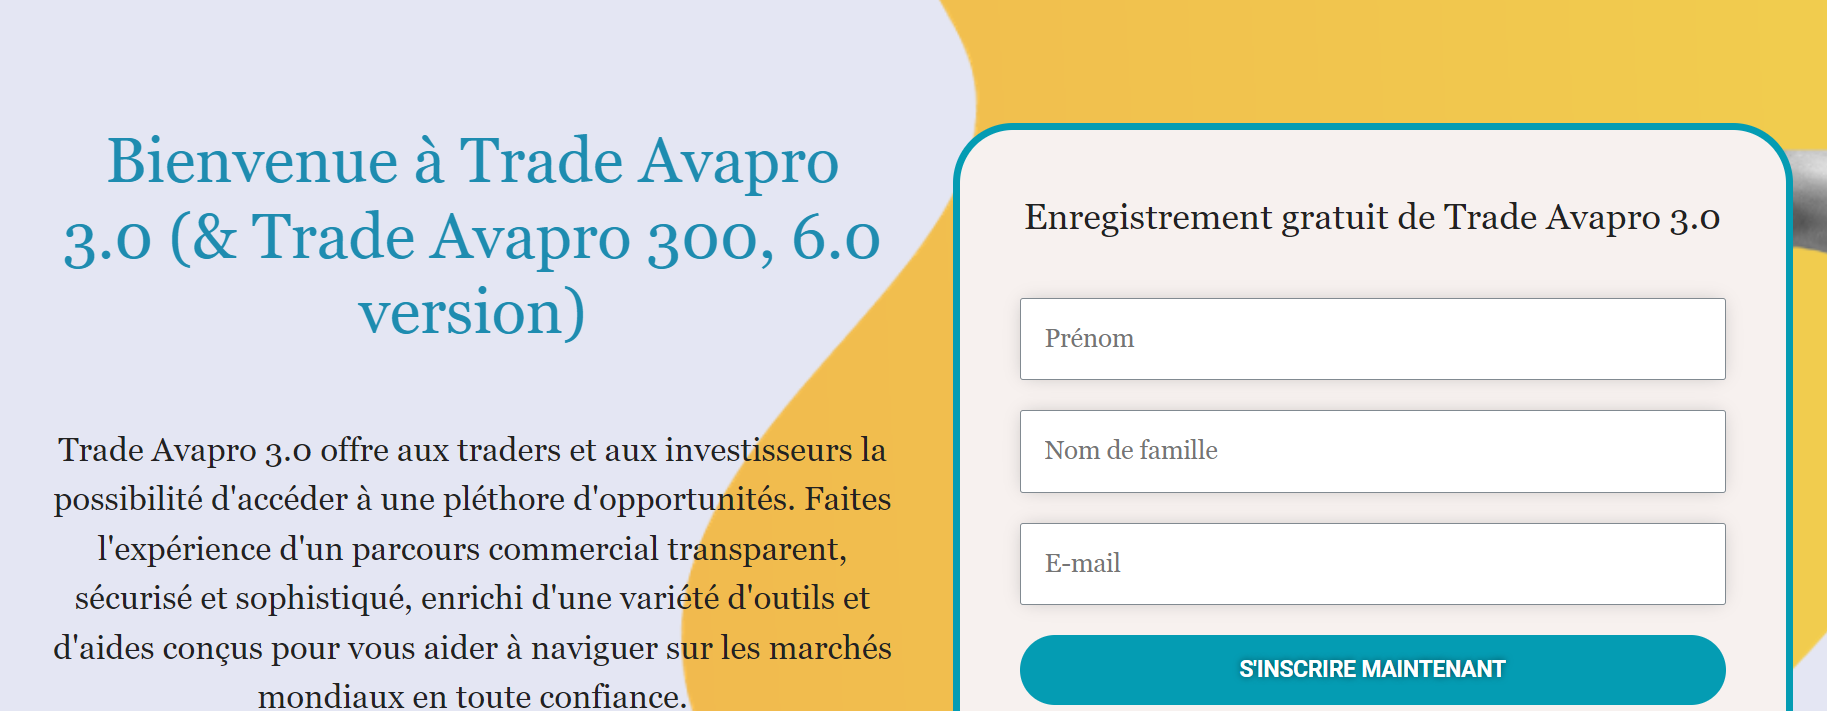 Graphiques de performance financière utilisés sur Trade AvaPro 3.0 pour illustrer des succès de trading